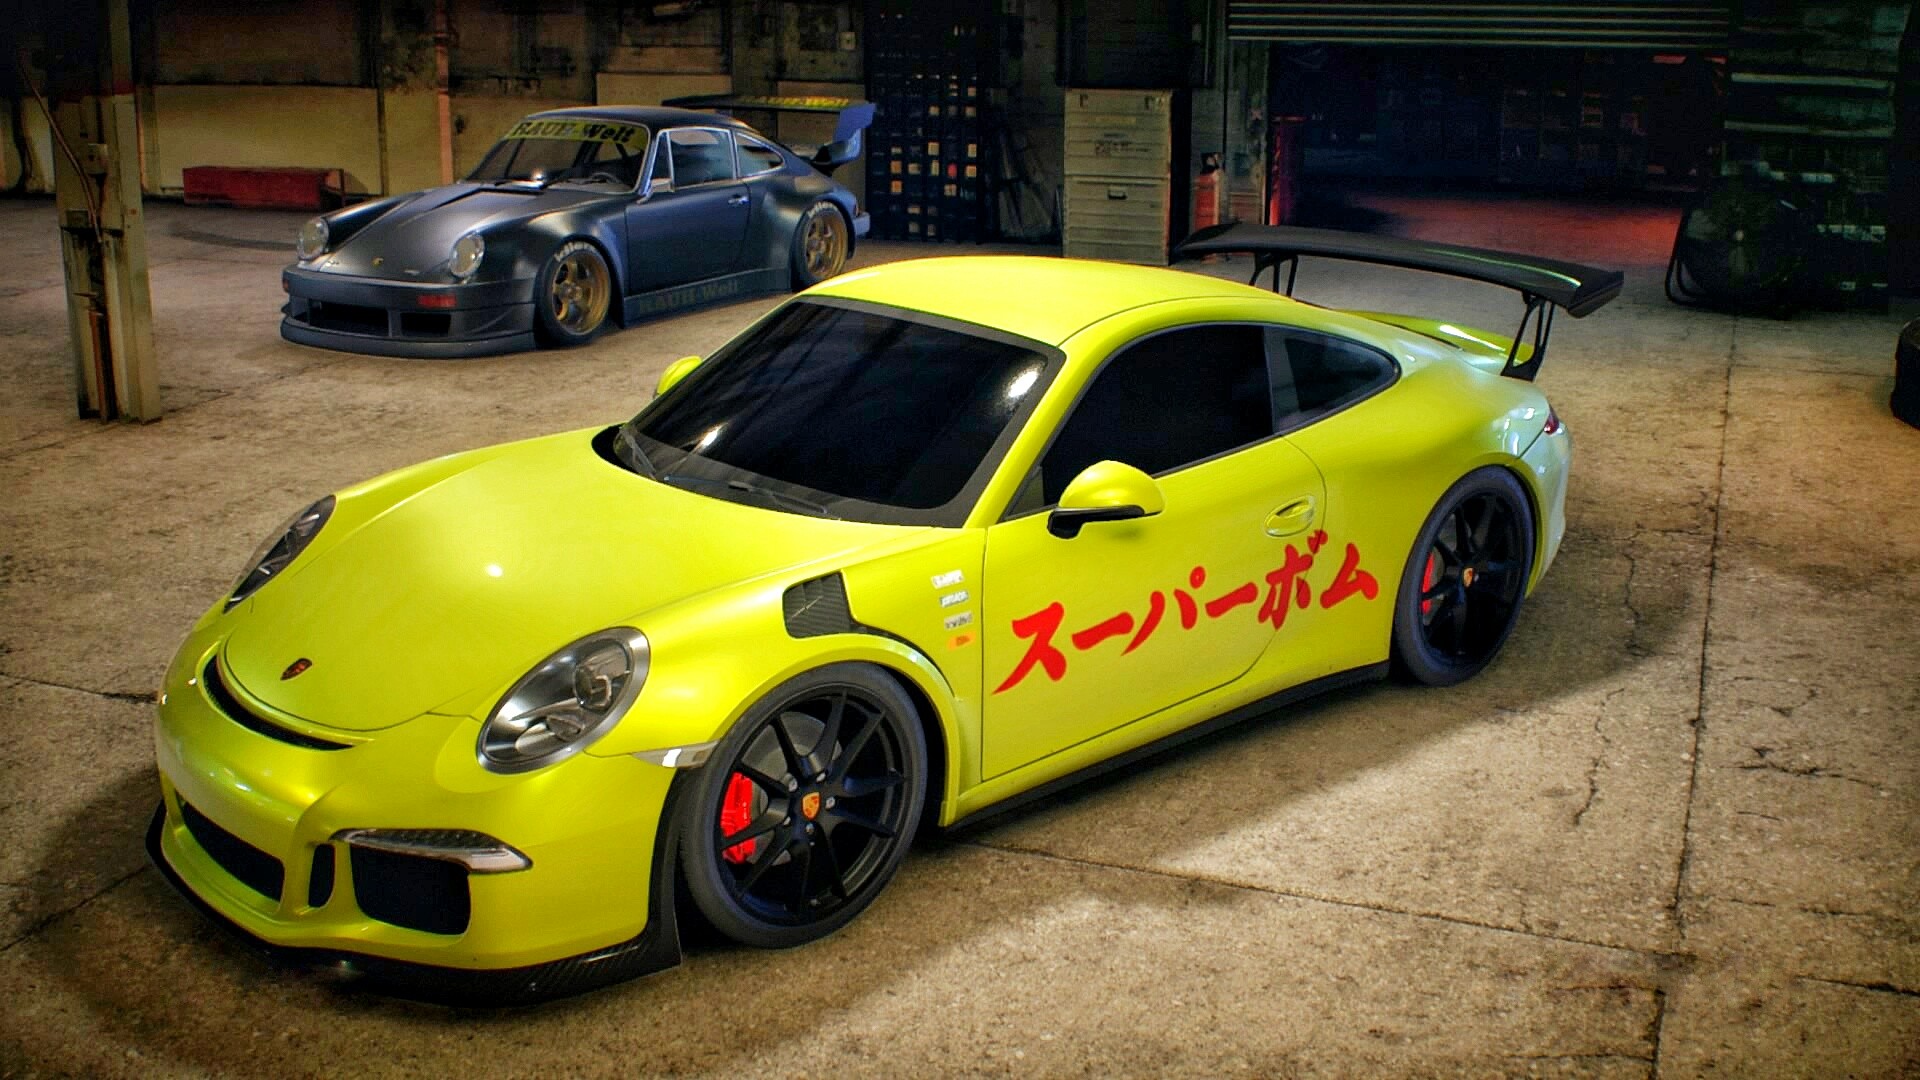 Need For Speed Car Video Games Garages Porsche Porsche 911 Carrera S Porsche 911 GT3 RS Yellow Cars 1920x1080